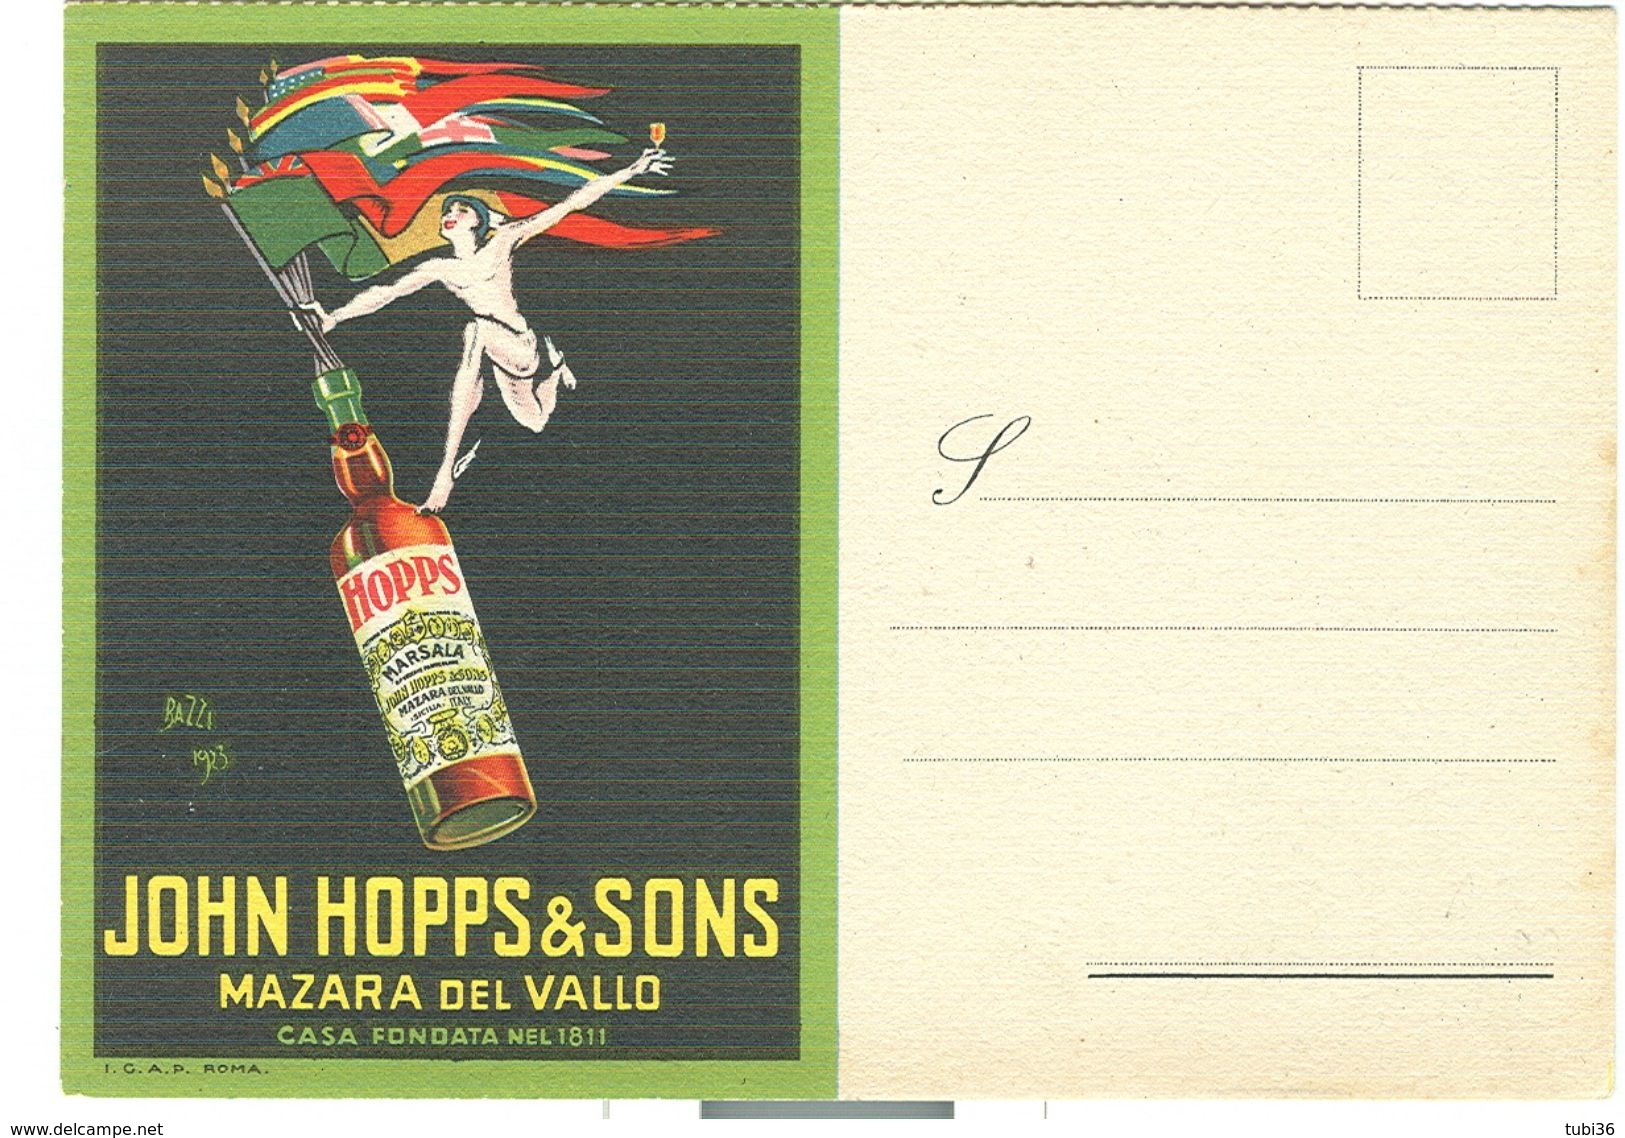 John Hopps & Sons, Mazara Del Vallo - Casa Fondata Nel 1811,PUBBLICITARIA, FIRMA BAZZI 1923, NUOVA PERFETTA - Mazara Del Vallo